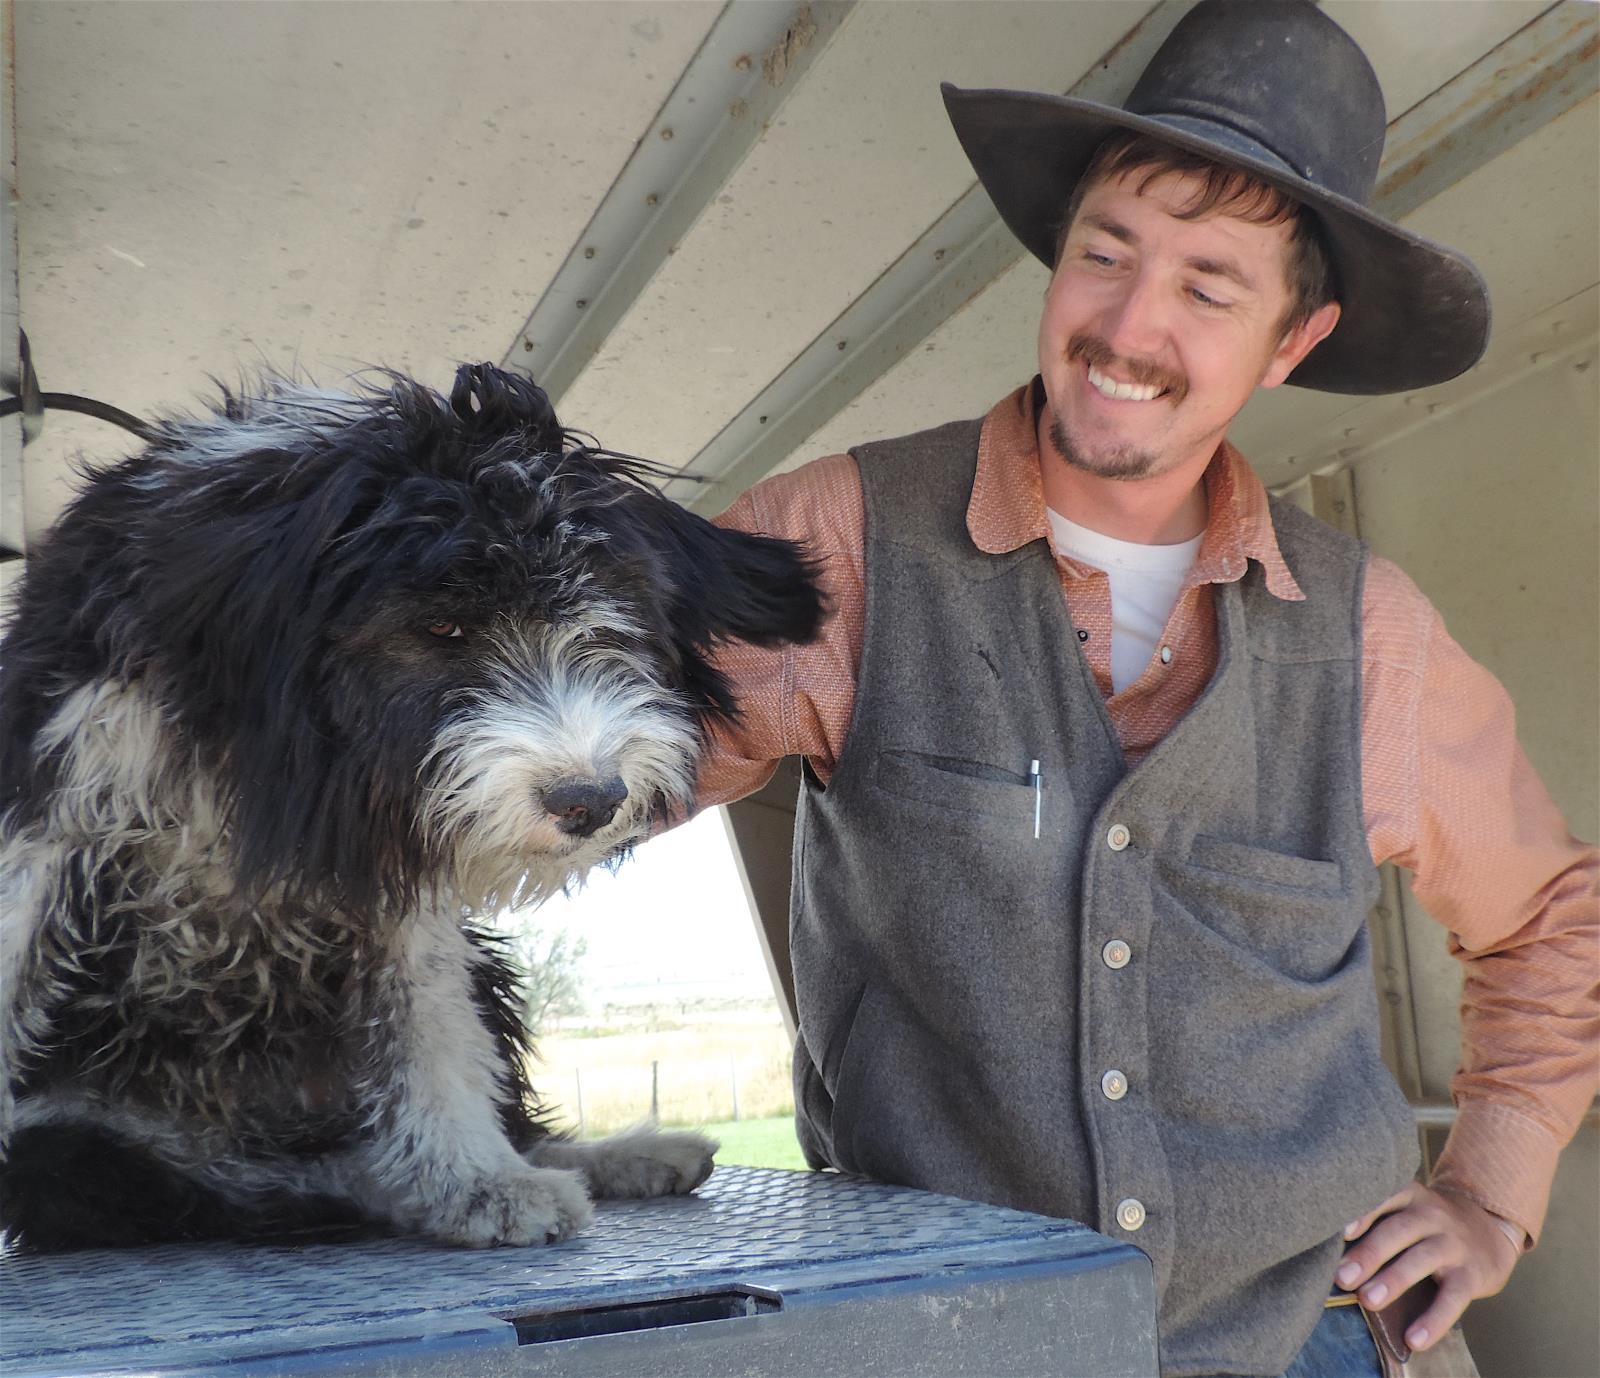 Idaho Shags' livestock handling spur 